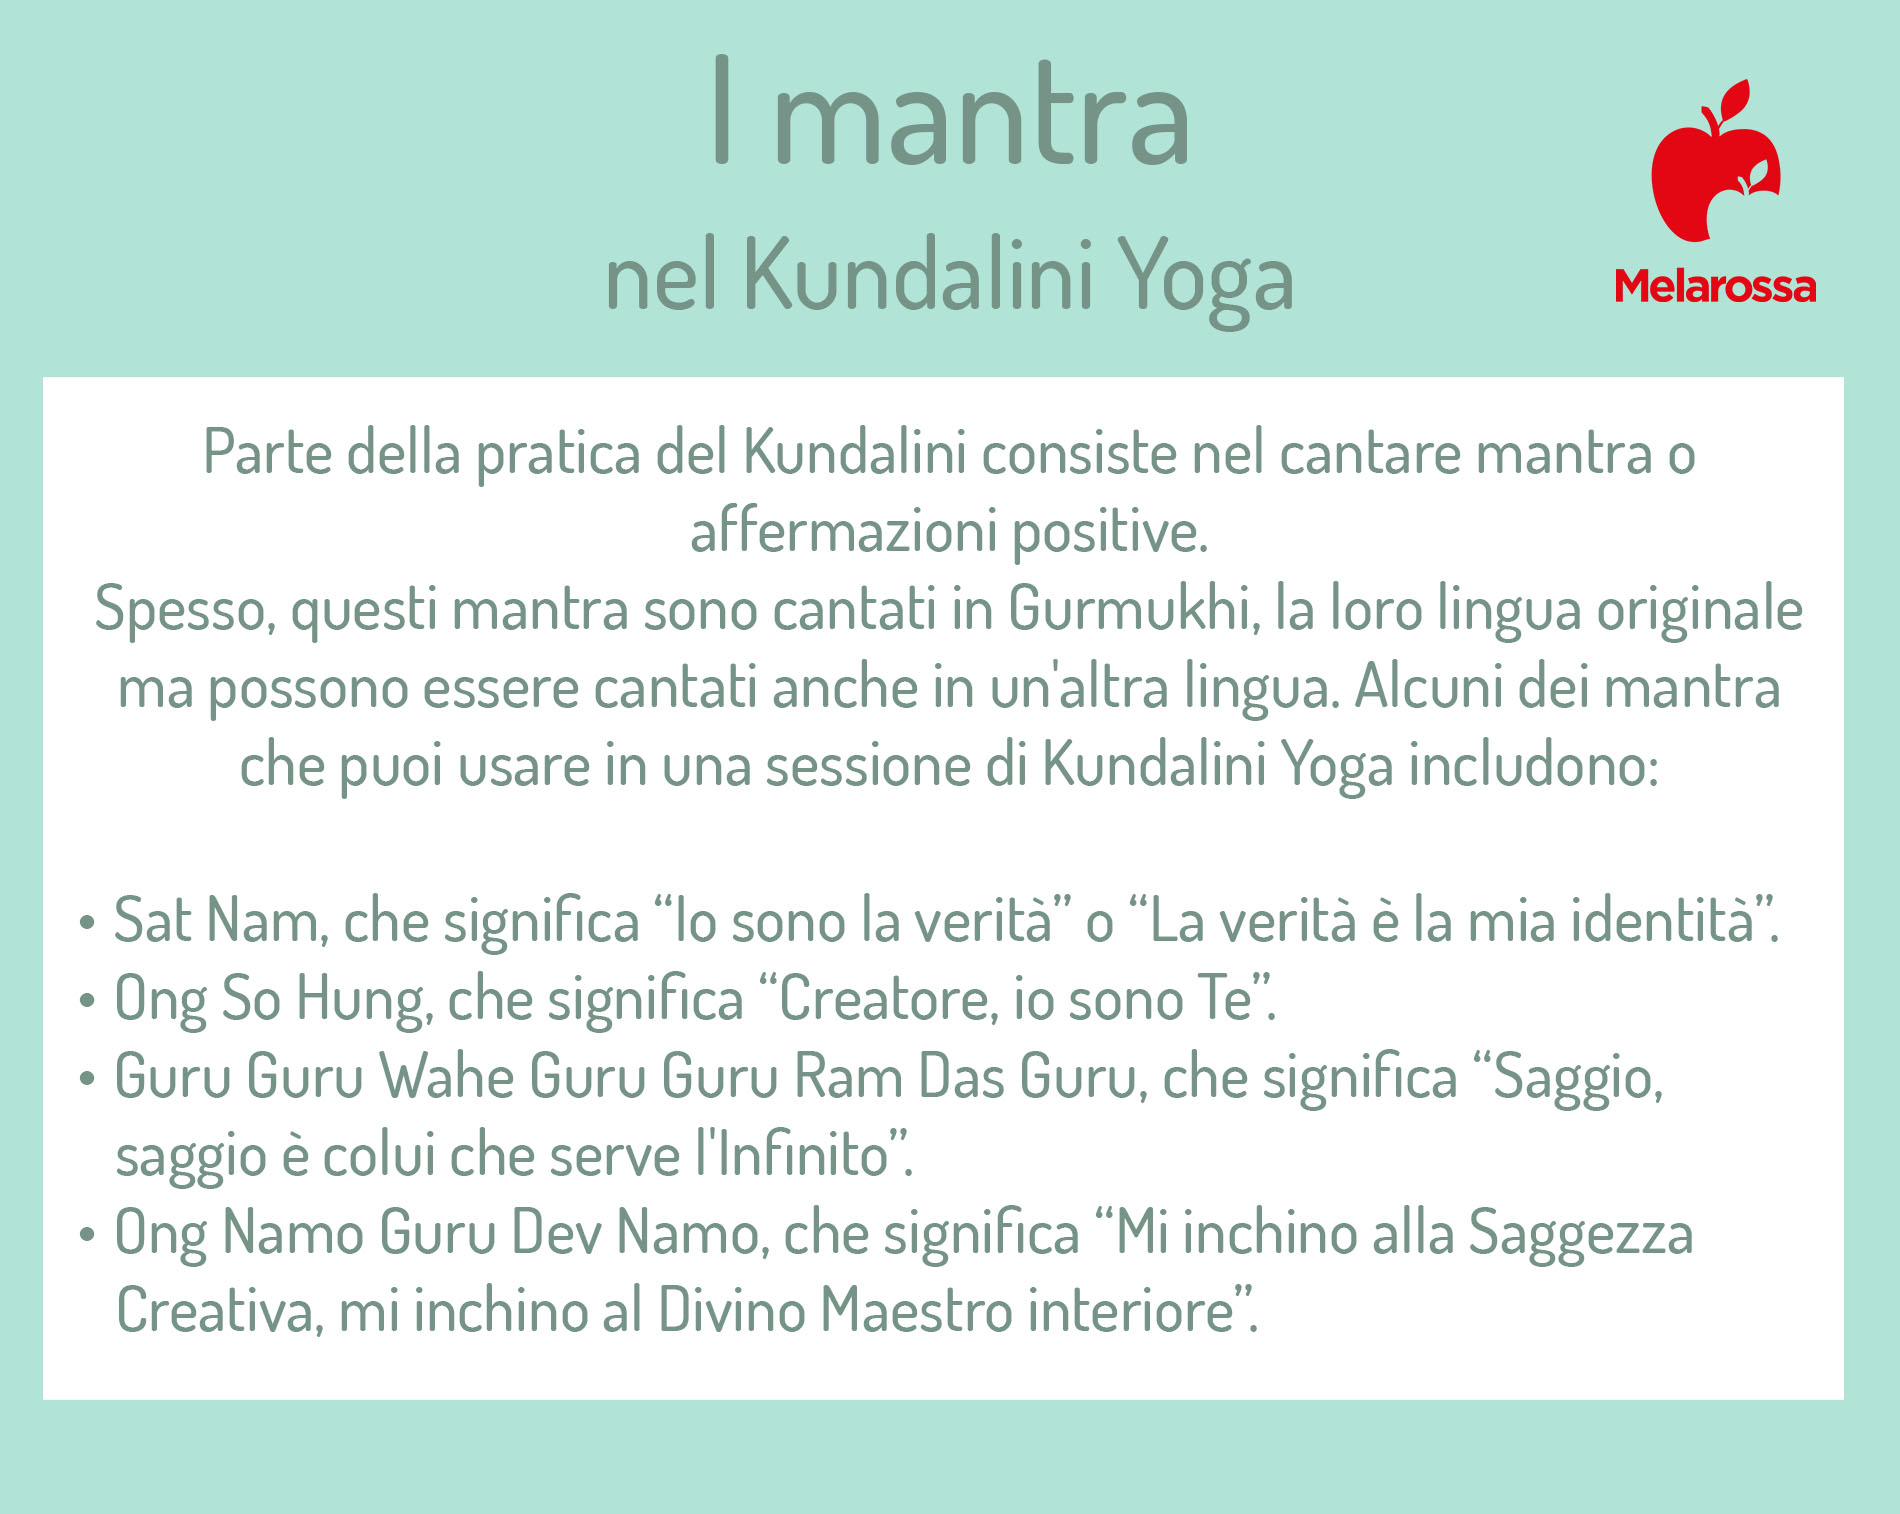 Kundalini yoga: mantra 